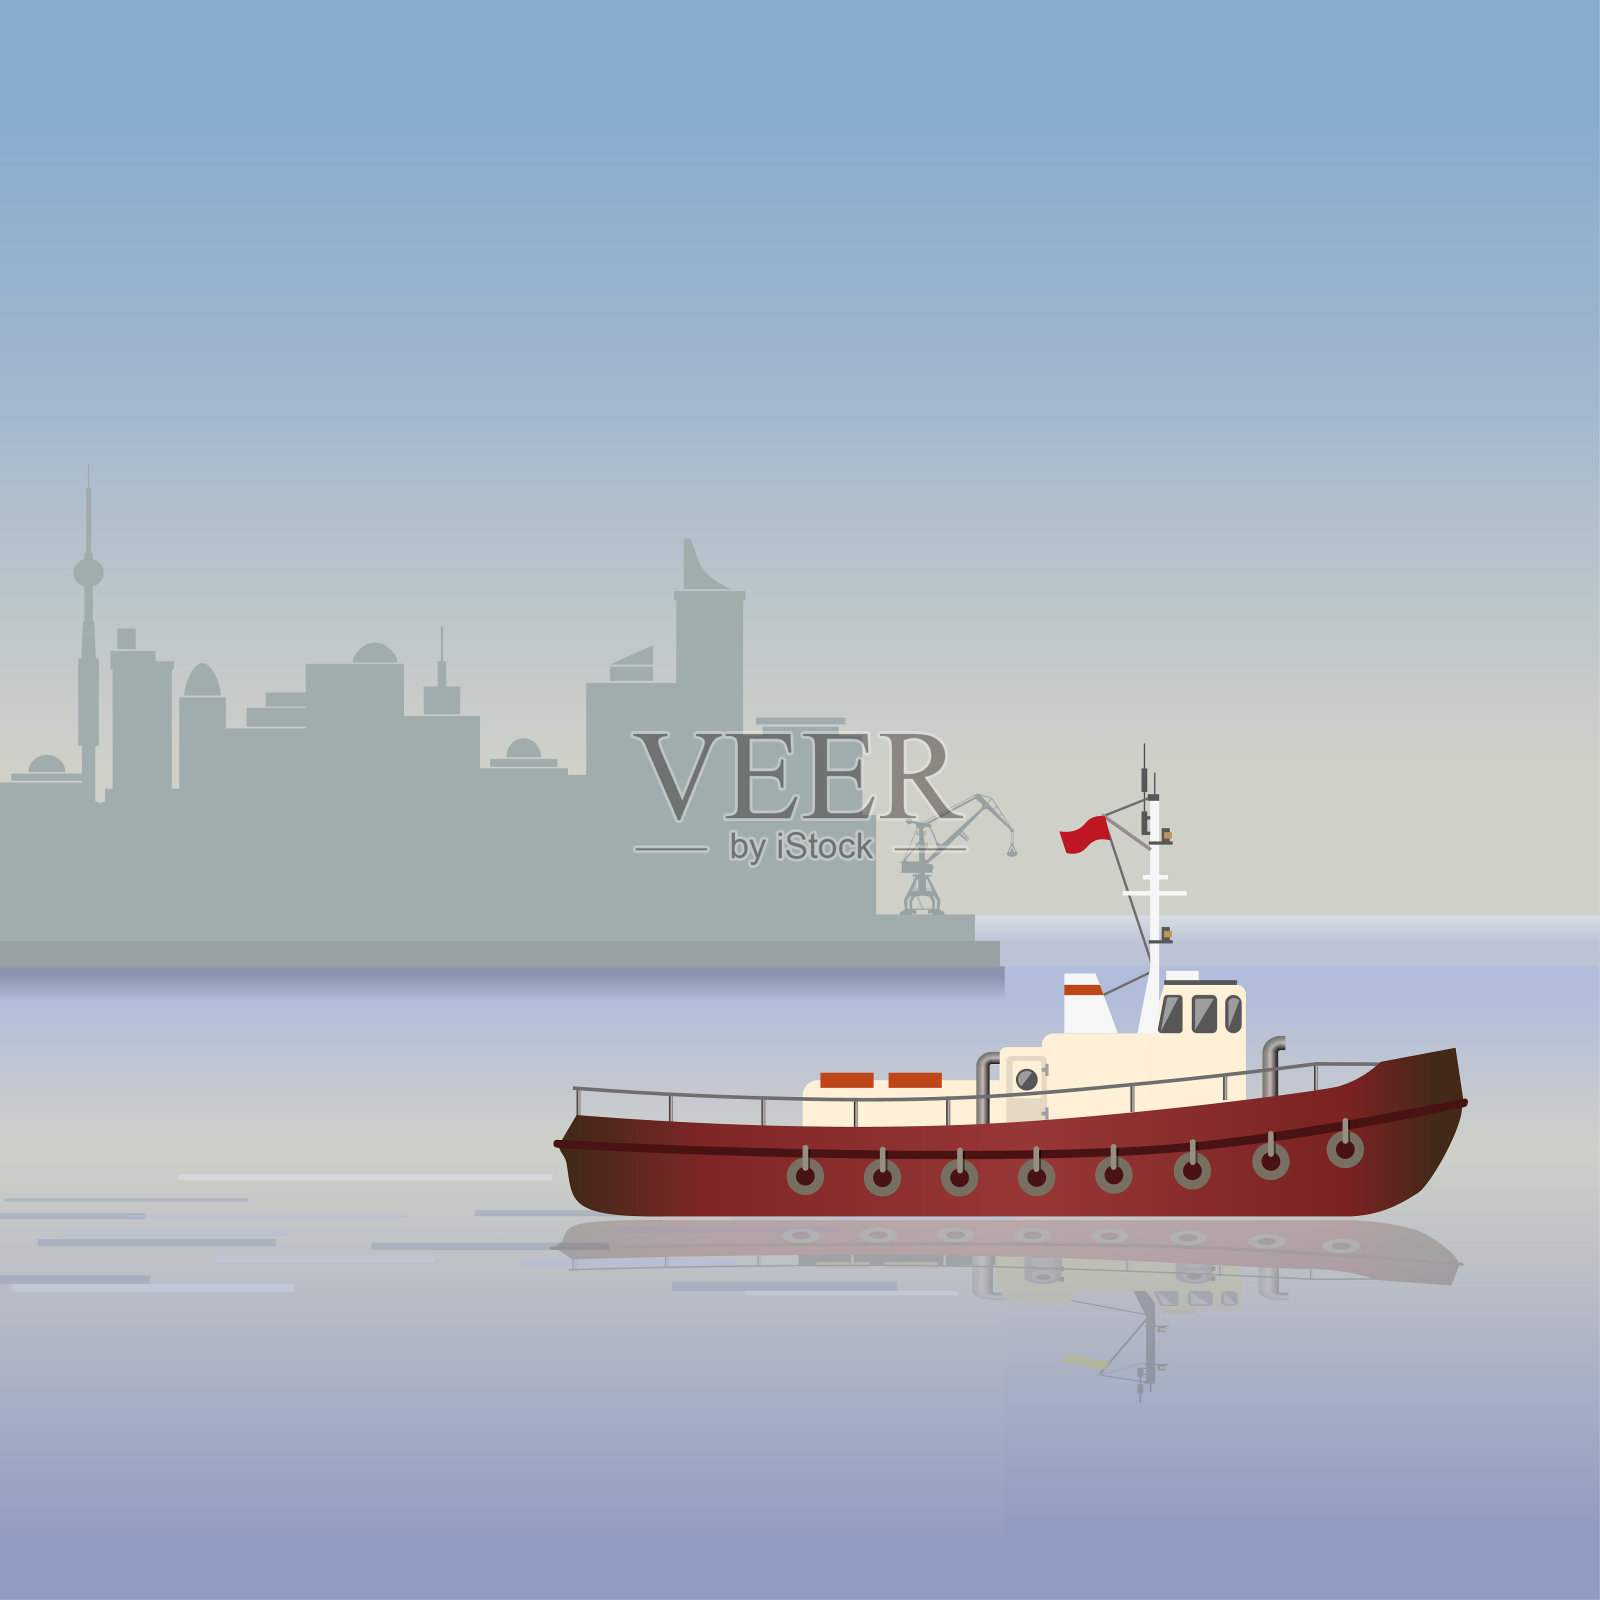 海景与一艘船插画图片素材